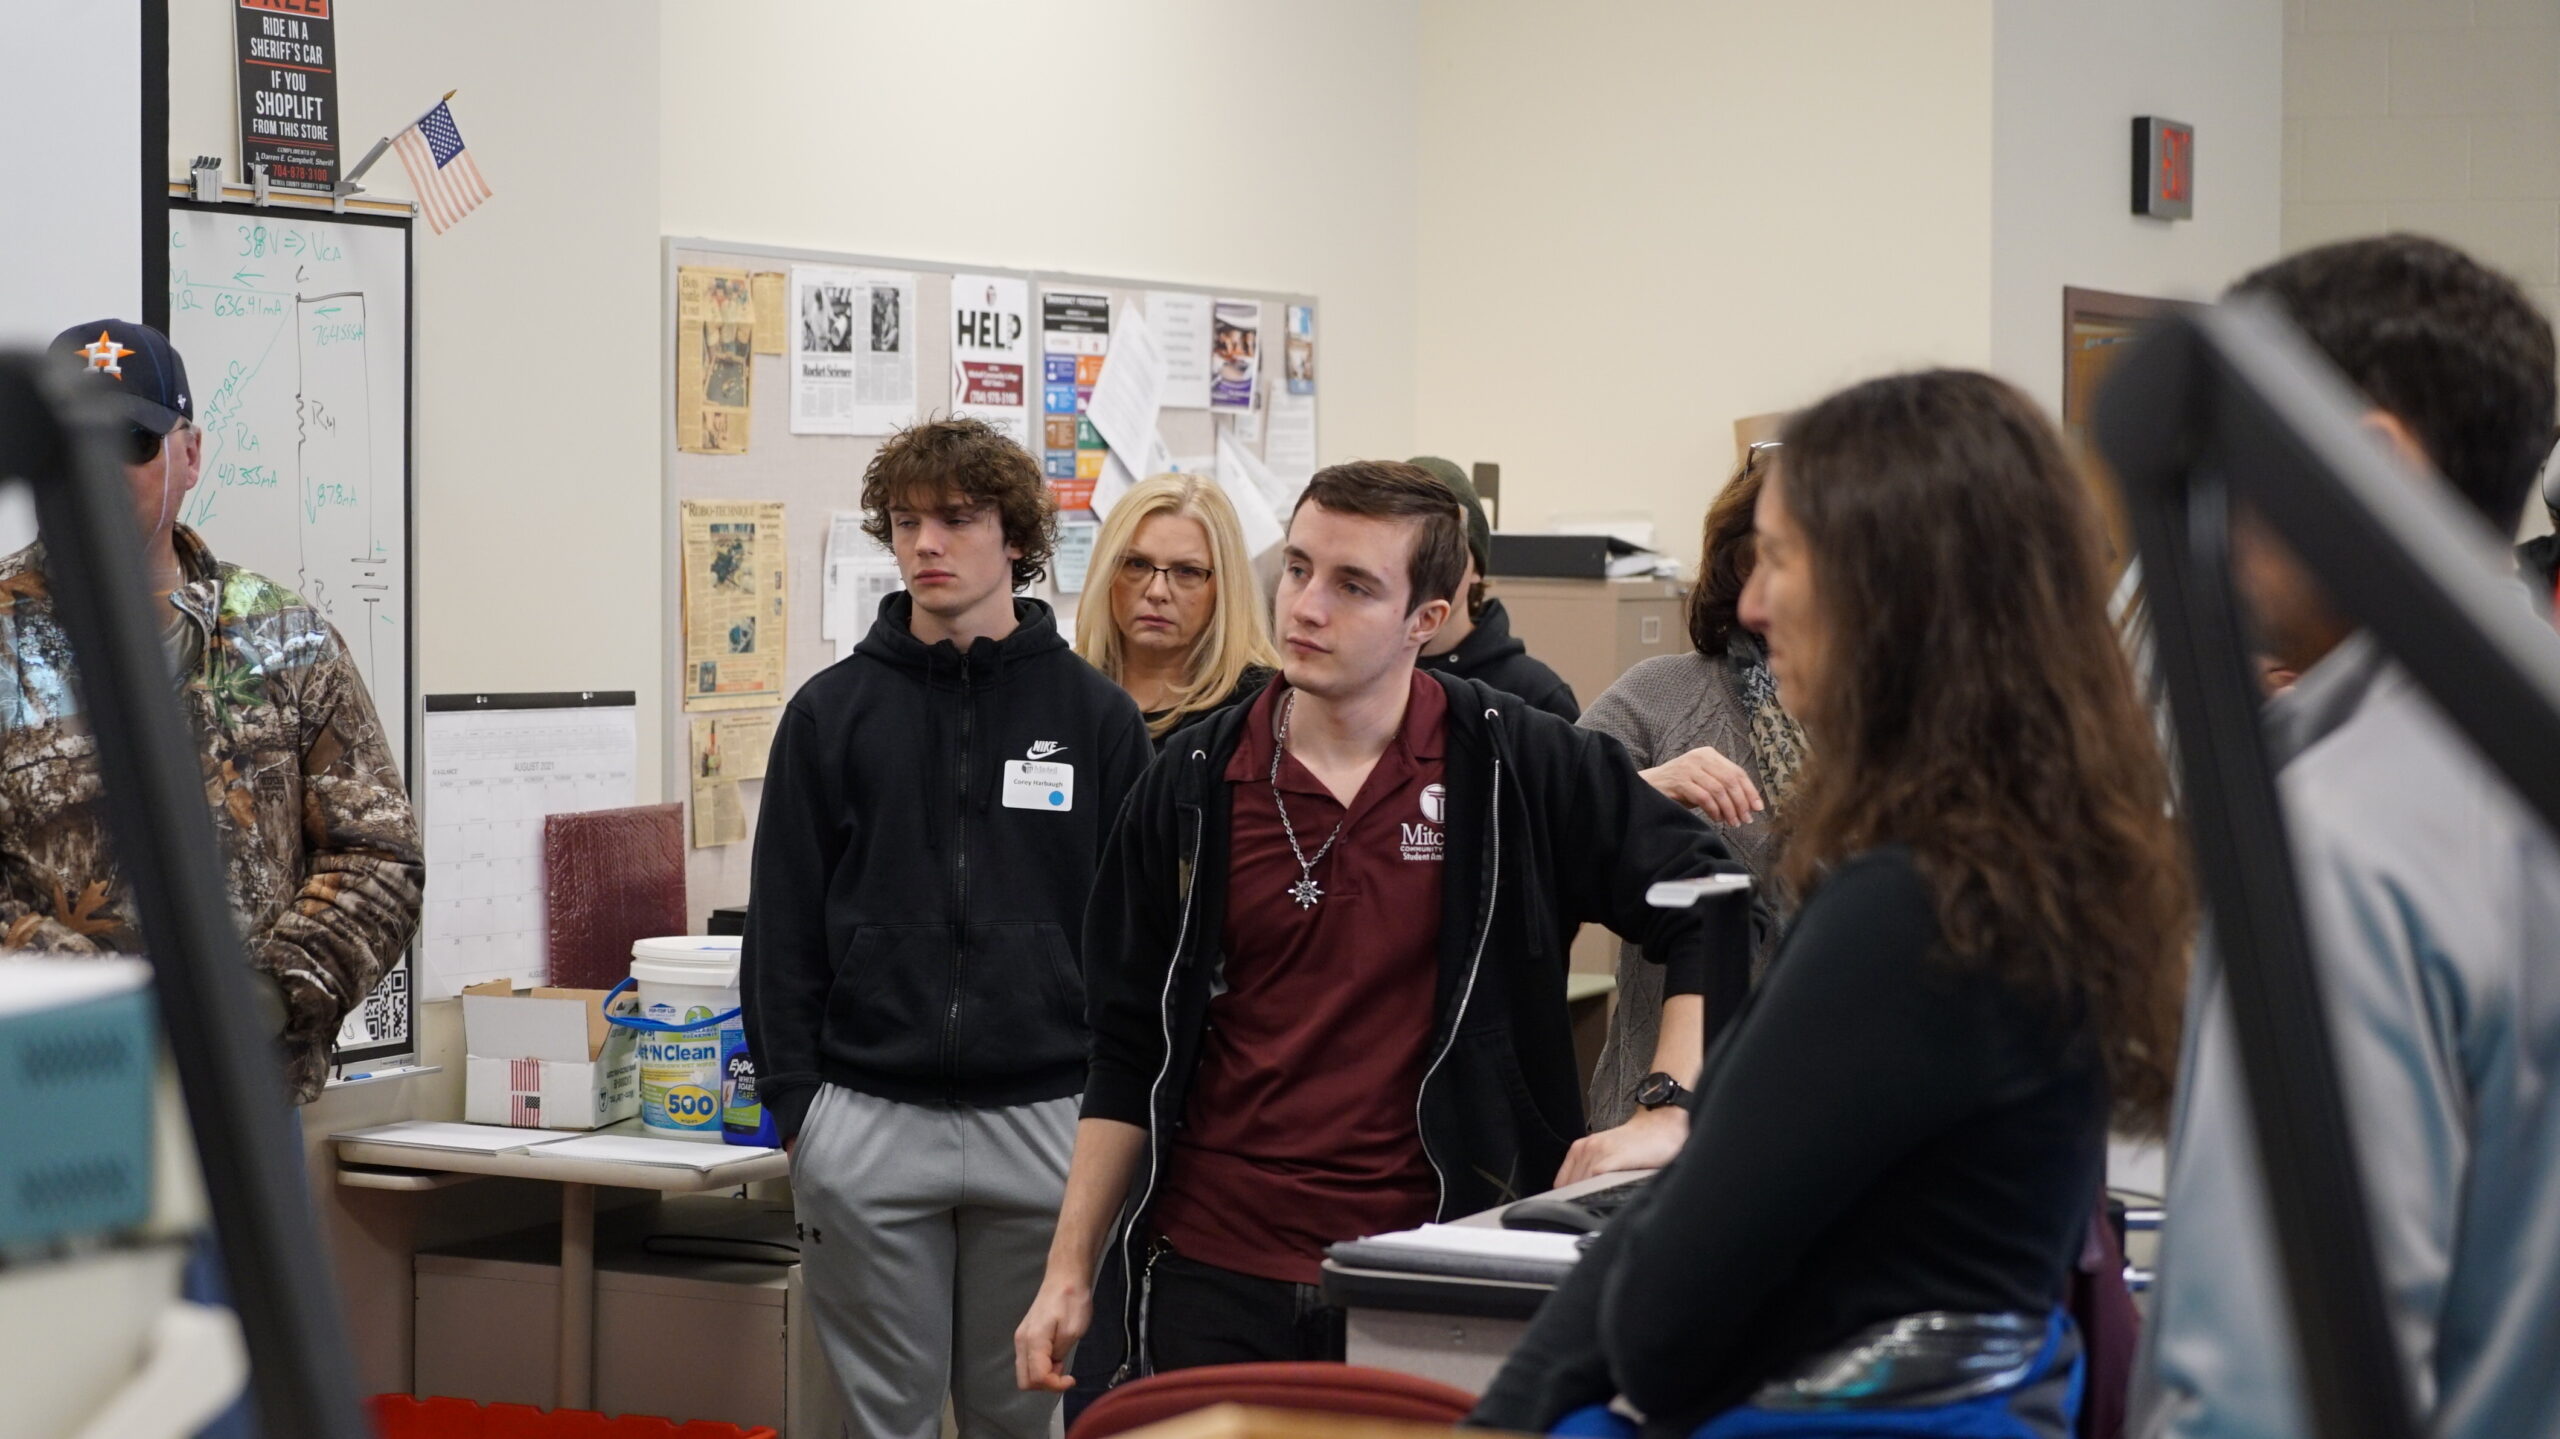 Будущие студенты Митчелла слушают презентацию во время экскурсии по кампусу.